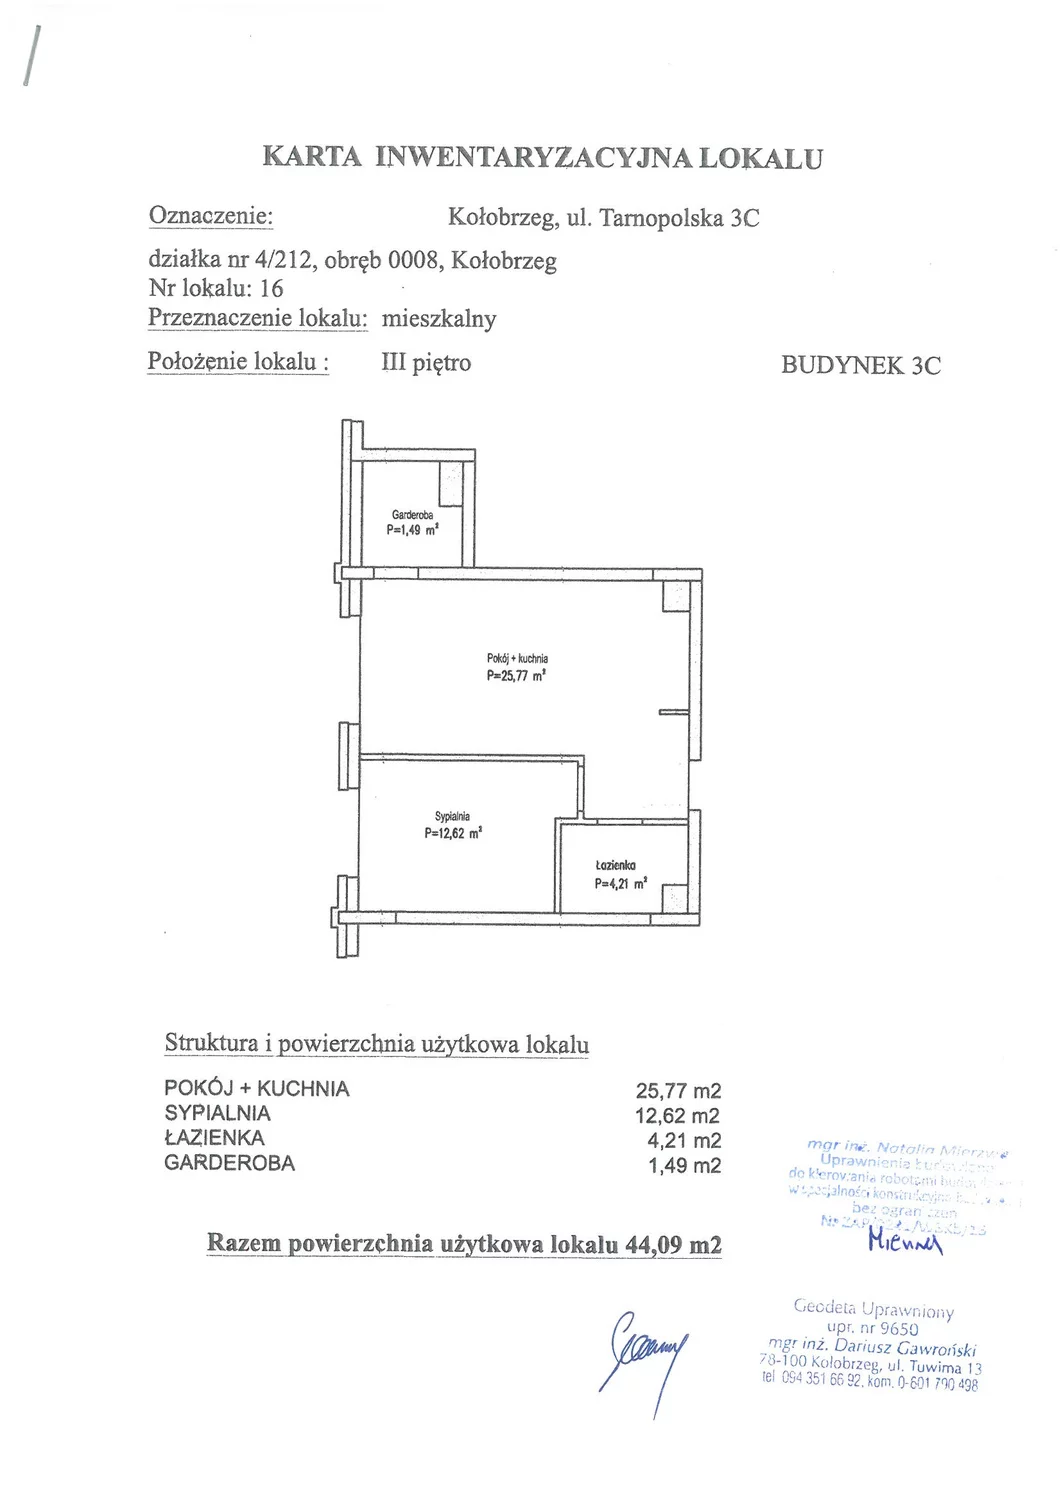 Apartament 44,09 m², piętro 3, oferta nr C16, Miejski Las, Kołobrzeg, Podczele, ul. Tarnopolska 3 A, B, C